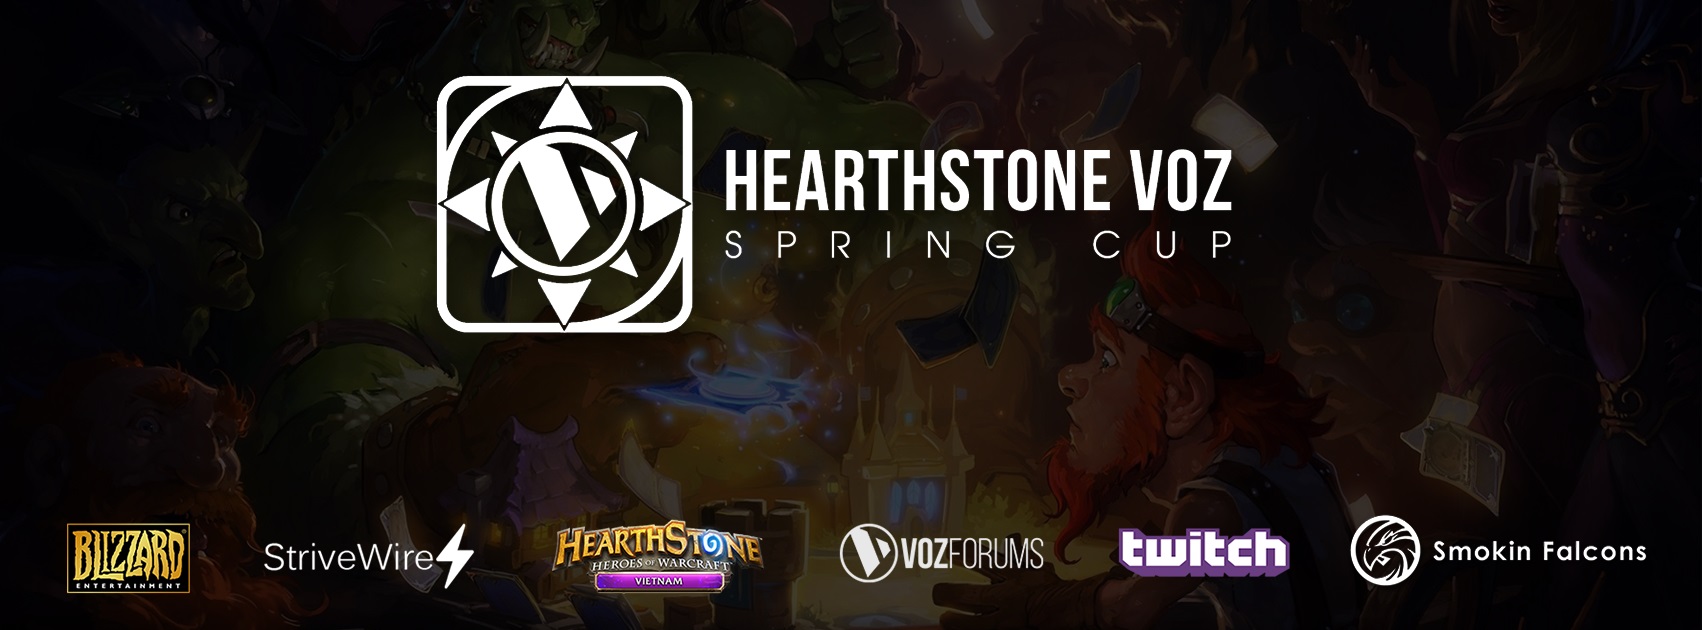 Hearthstone VOZ Spring Cup khởi tranh từ ngày 16.4